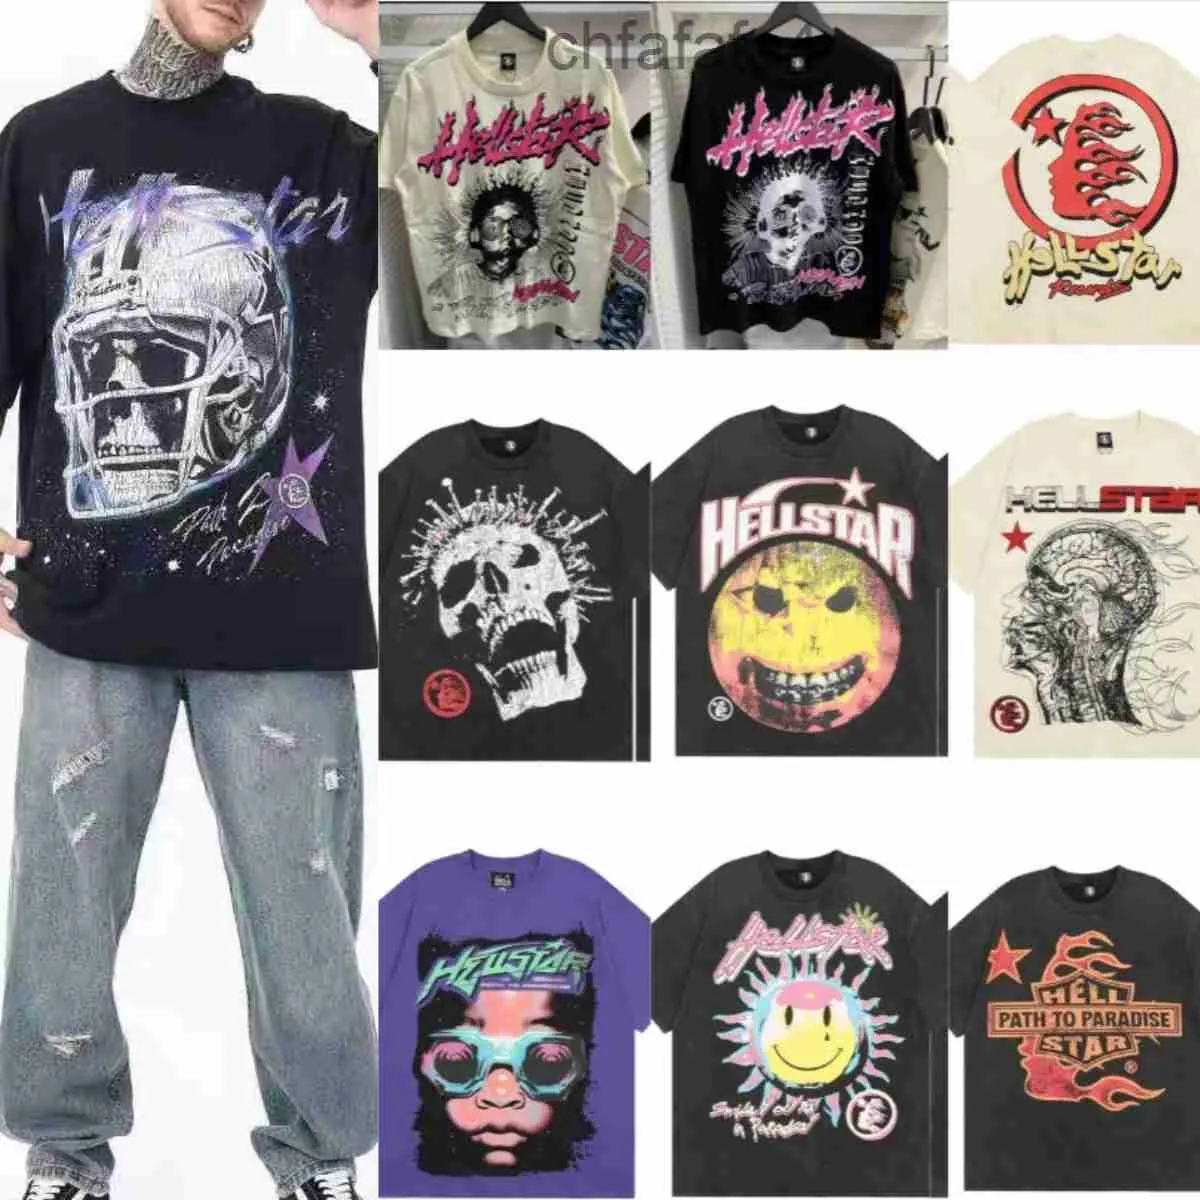 Designer Hommes T-shirts Hellstar T-shirts Court Rappeur Chemise Imprimer Tees Hommes Lavé Gris Heavy Craft Taille Unisexe S-xl 28 Couleurs Option Fp0n